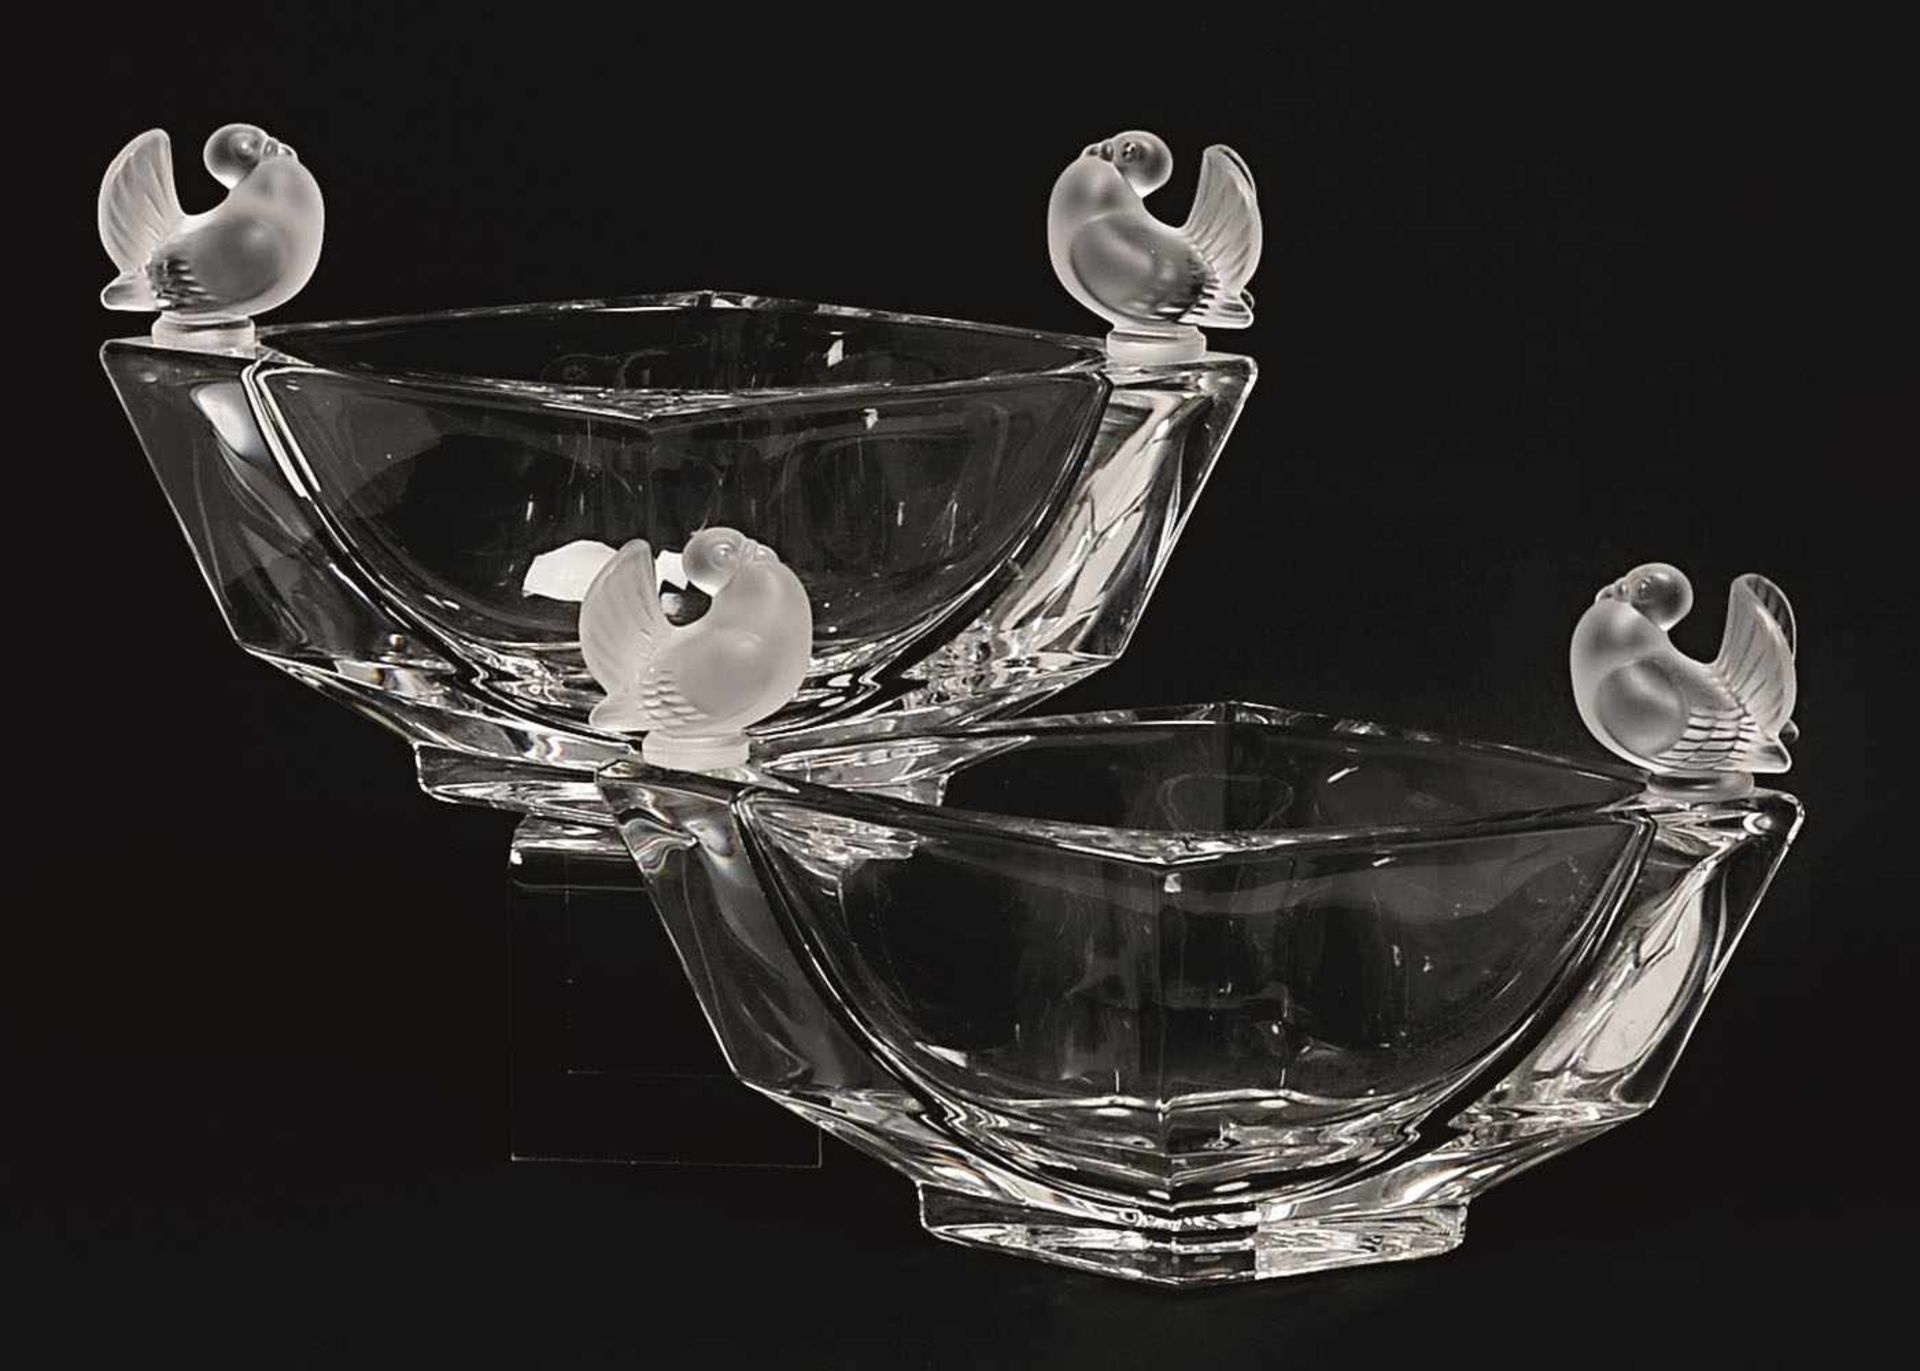 Ein Paar Schalen Cristal Sèvres France Farbloses Pressglas. Rautenförmige Schalen mit zwei